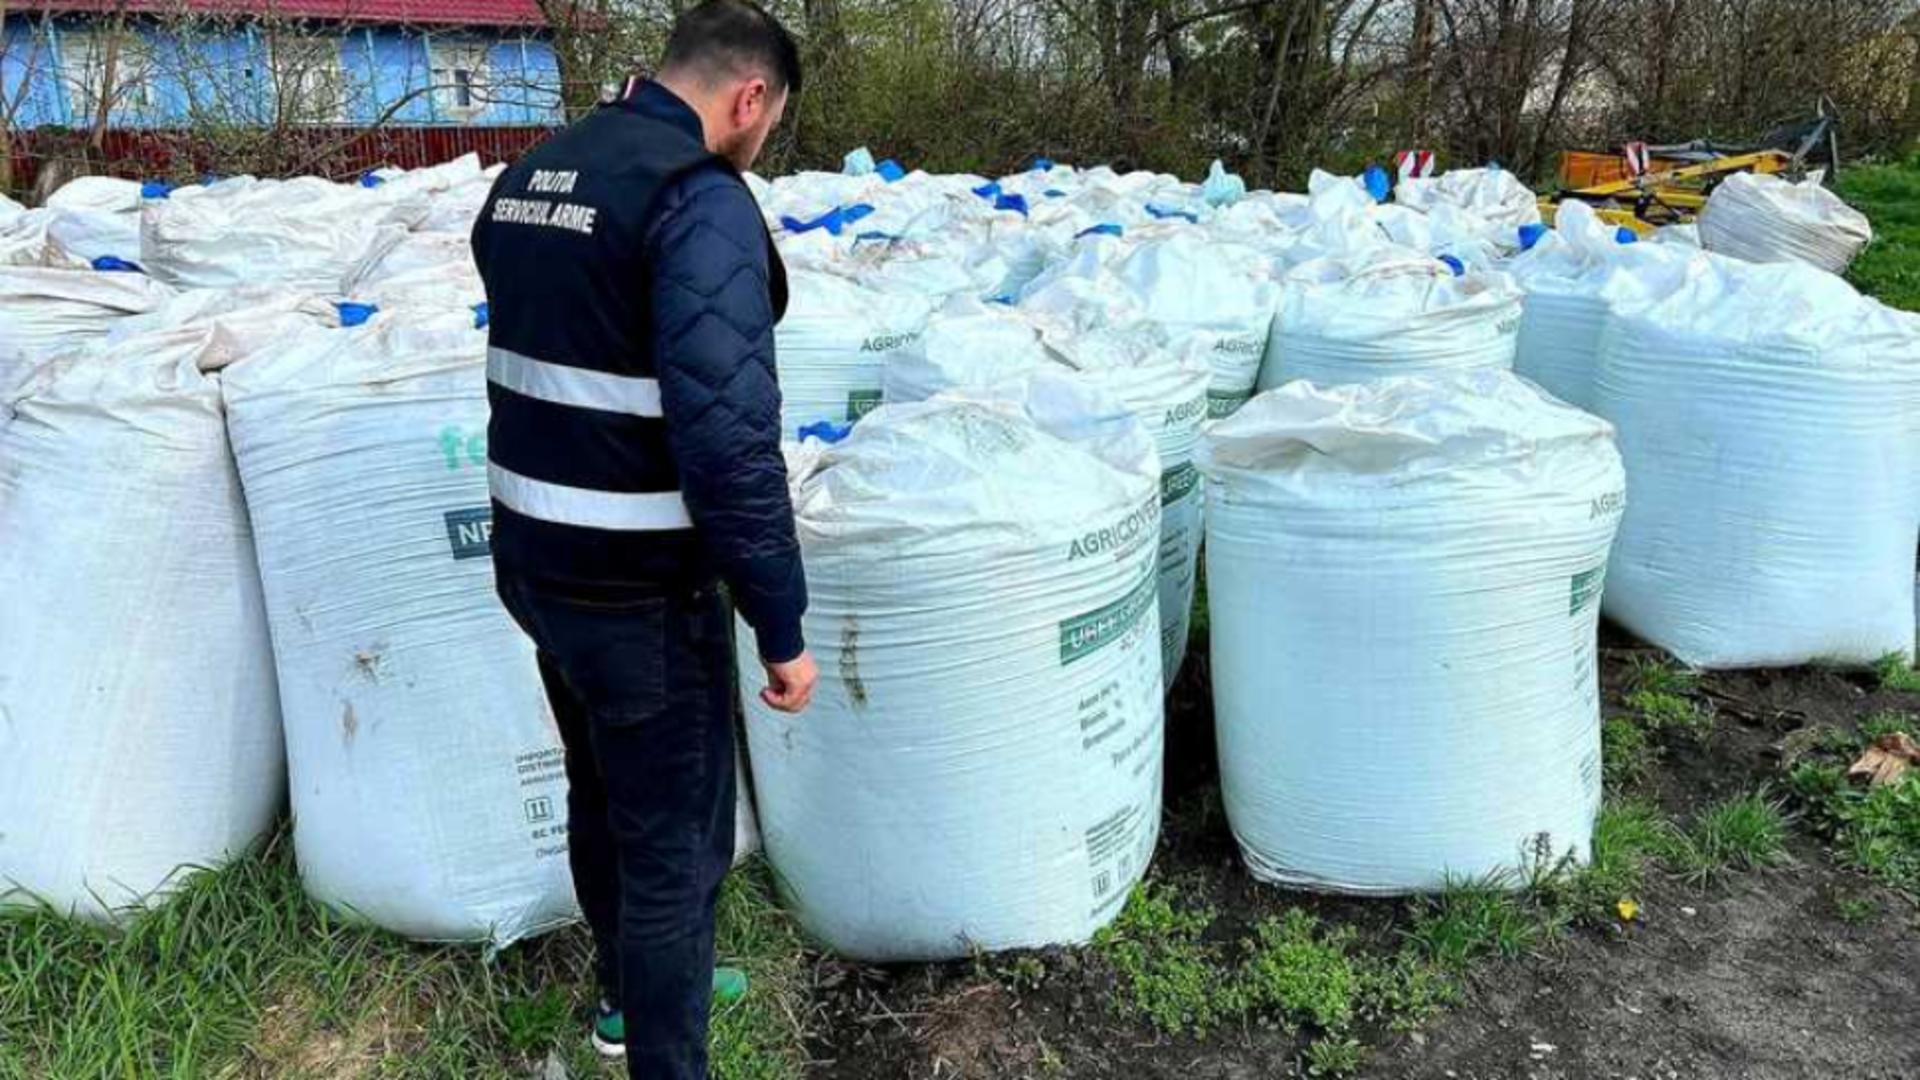 Poliţiştii din Botoșani au descoperit este 80 de tone de îngrăşământ depozitate ilegal, în apropierea unei şcoli